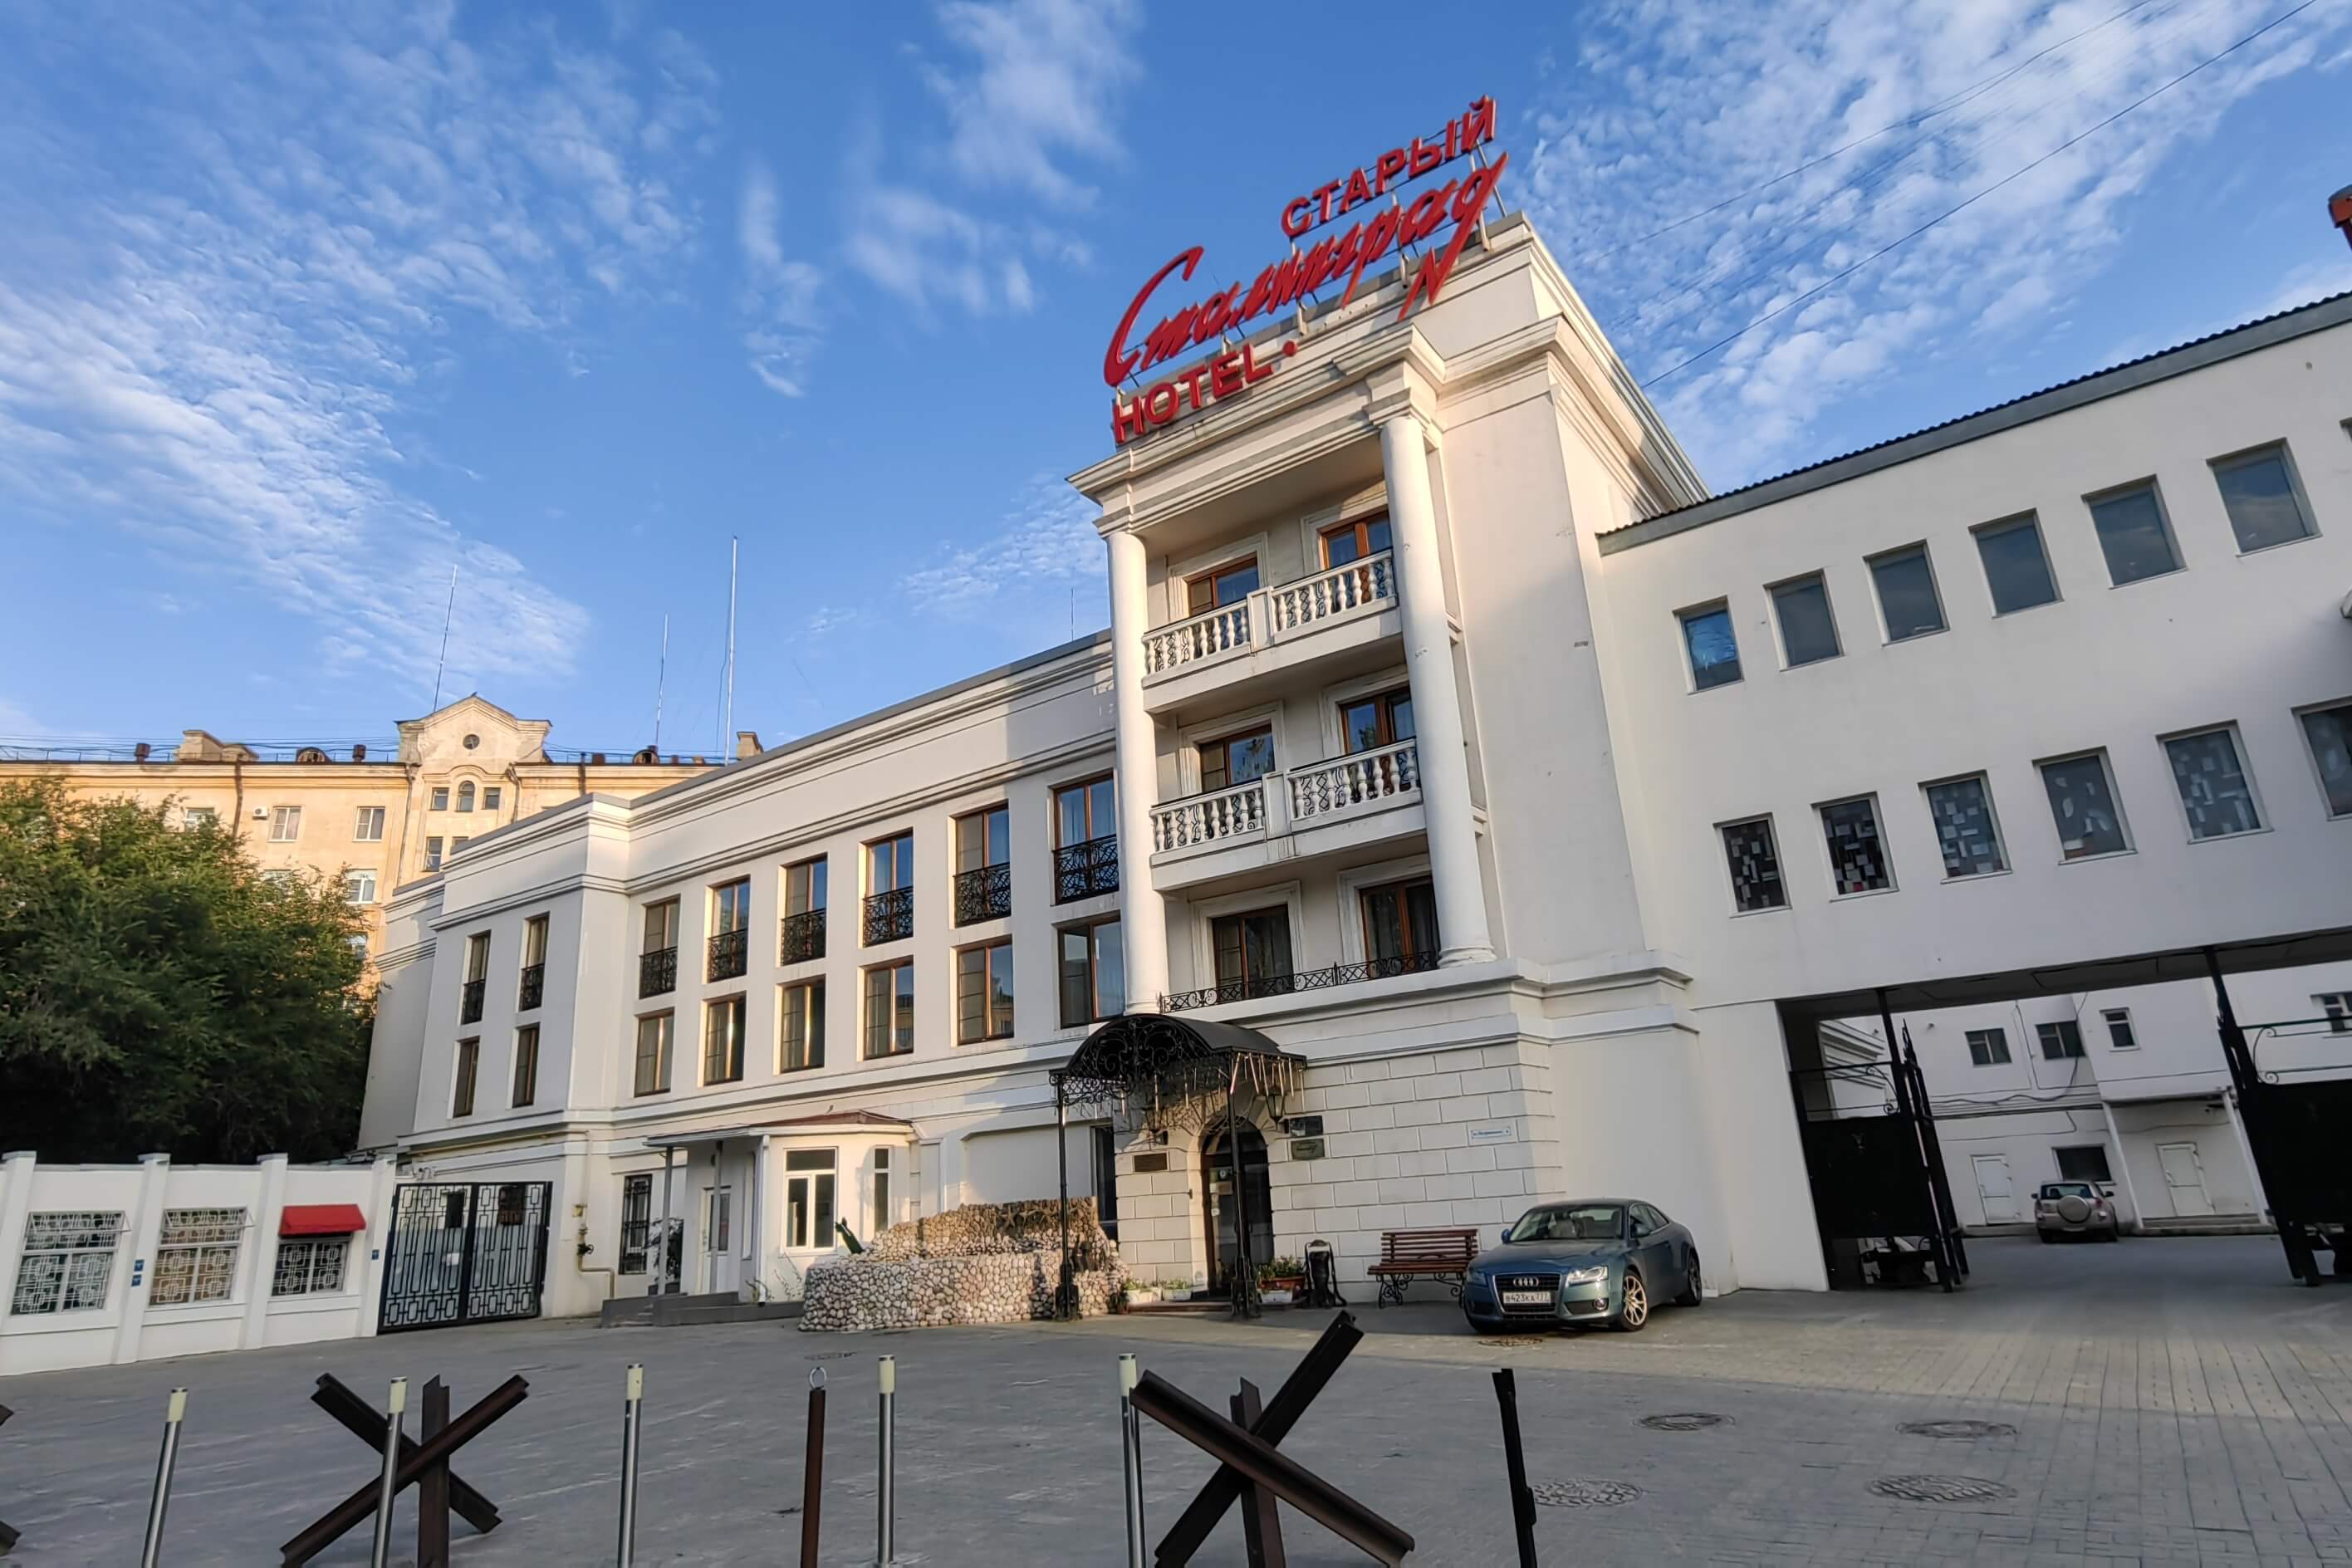 Старый Сталинград. Здание отеля, центральный фасад.